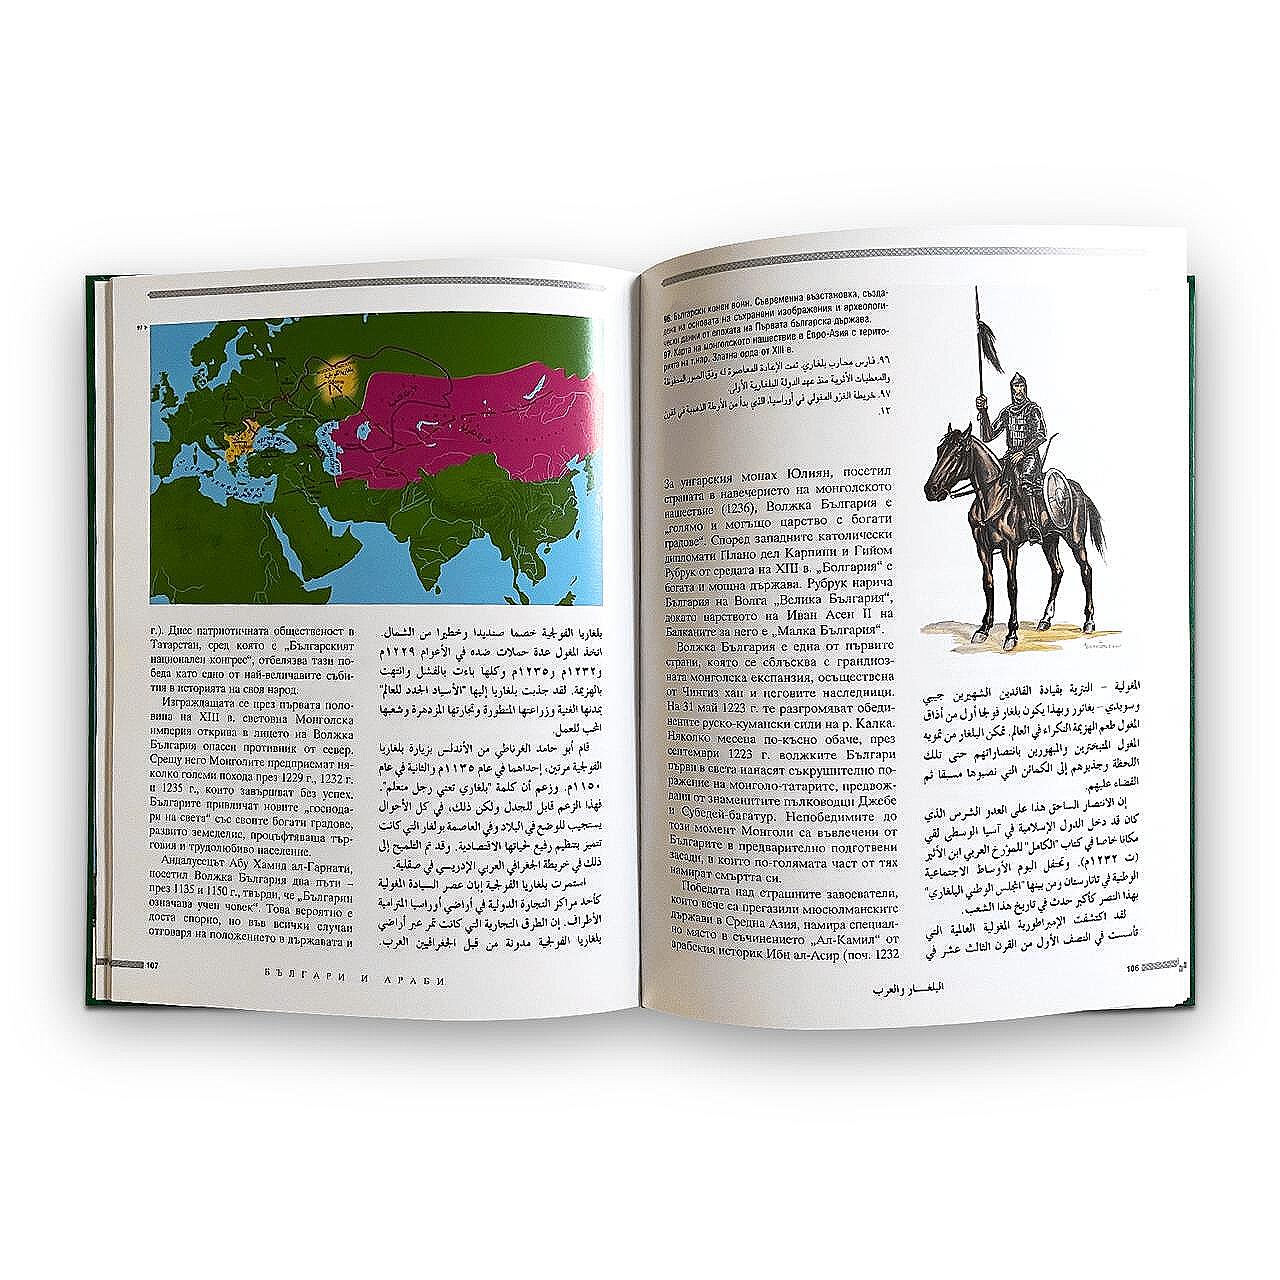 Книгата „Българи и араби“